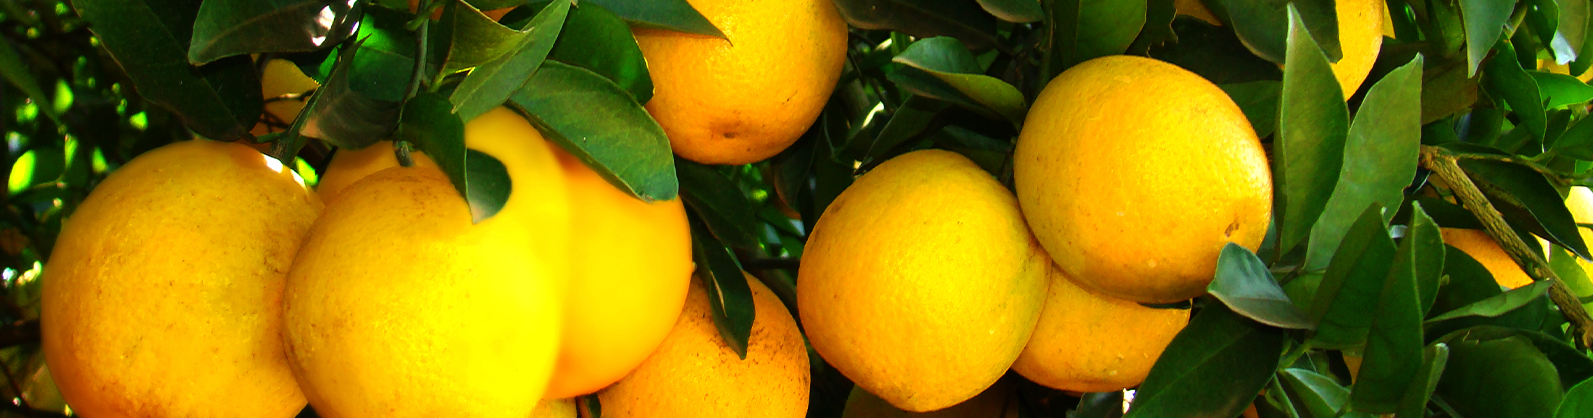 Clima derruba exportações de suco de laranja do Brasil